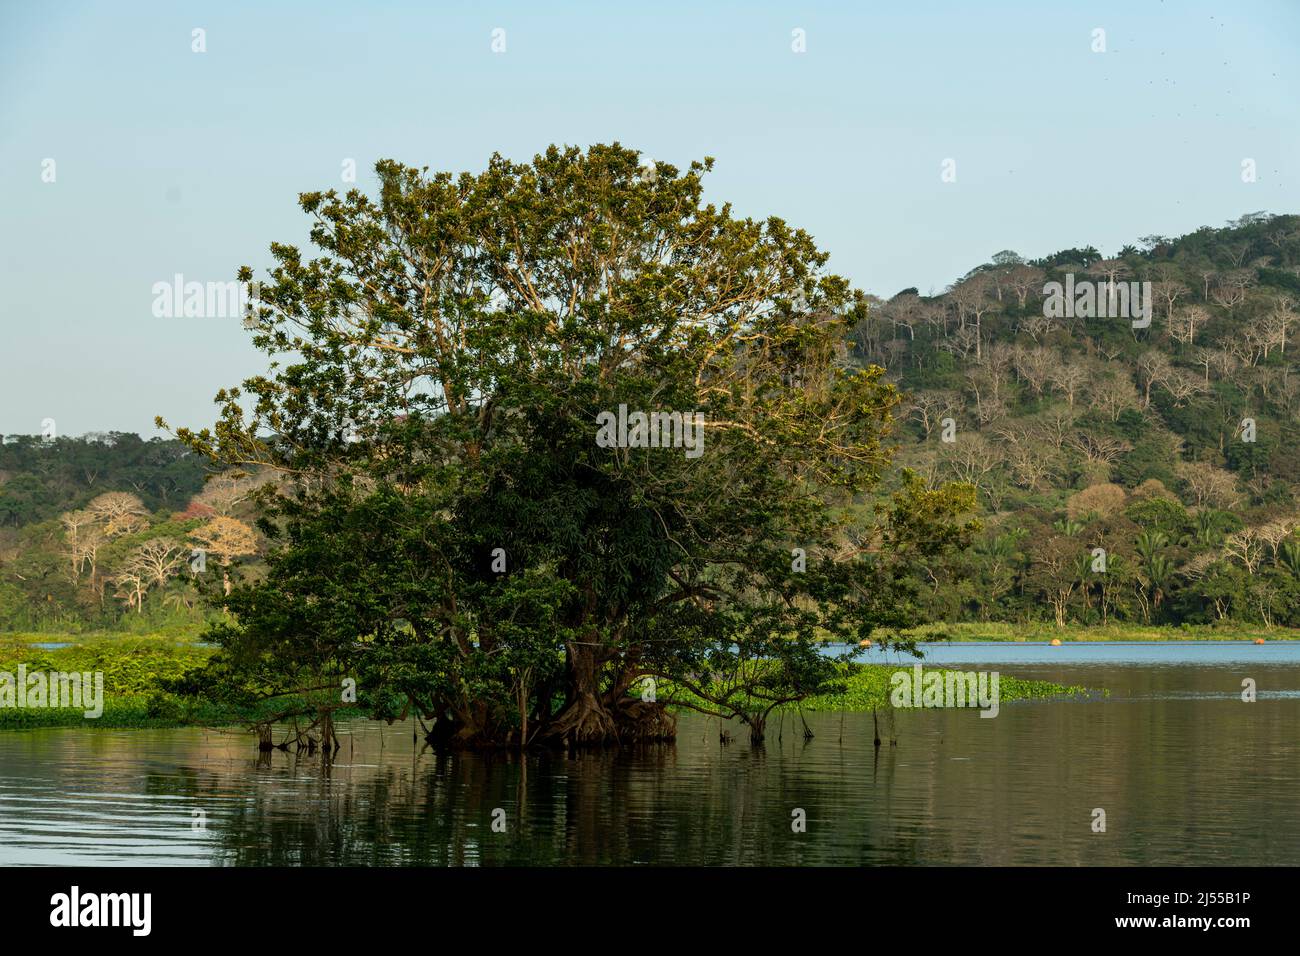 Foresta pluviale tropicale al lago Gatun, canale di Panama, Panama, America Centrale Foto Stock